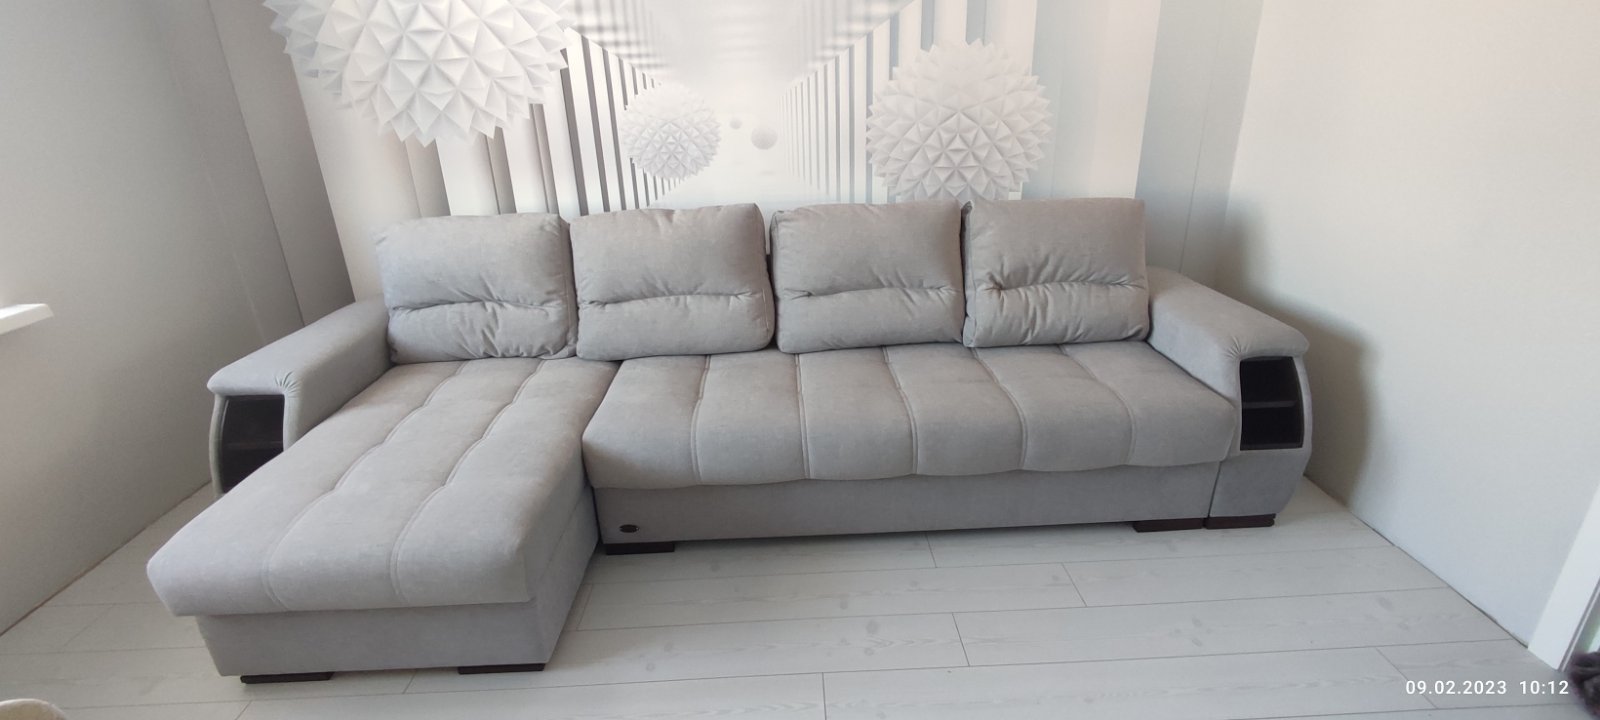 Купить угловой диван Ричмонд фабрики Прогресс: цены, фото, отзывы